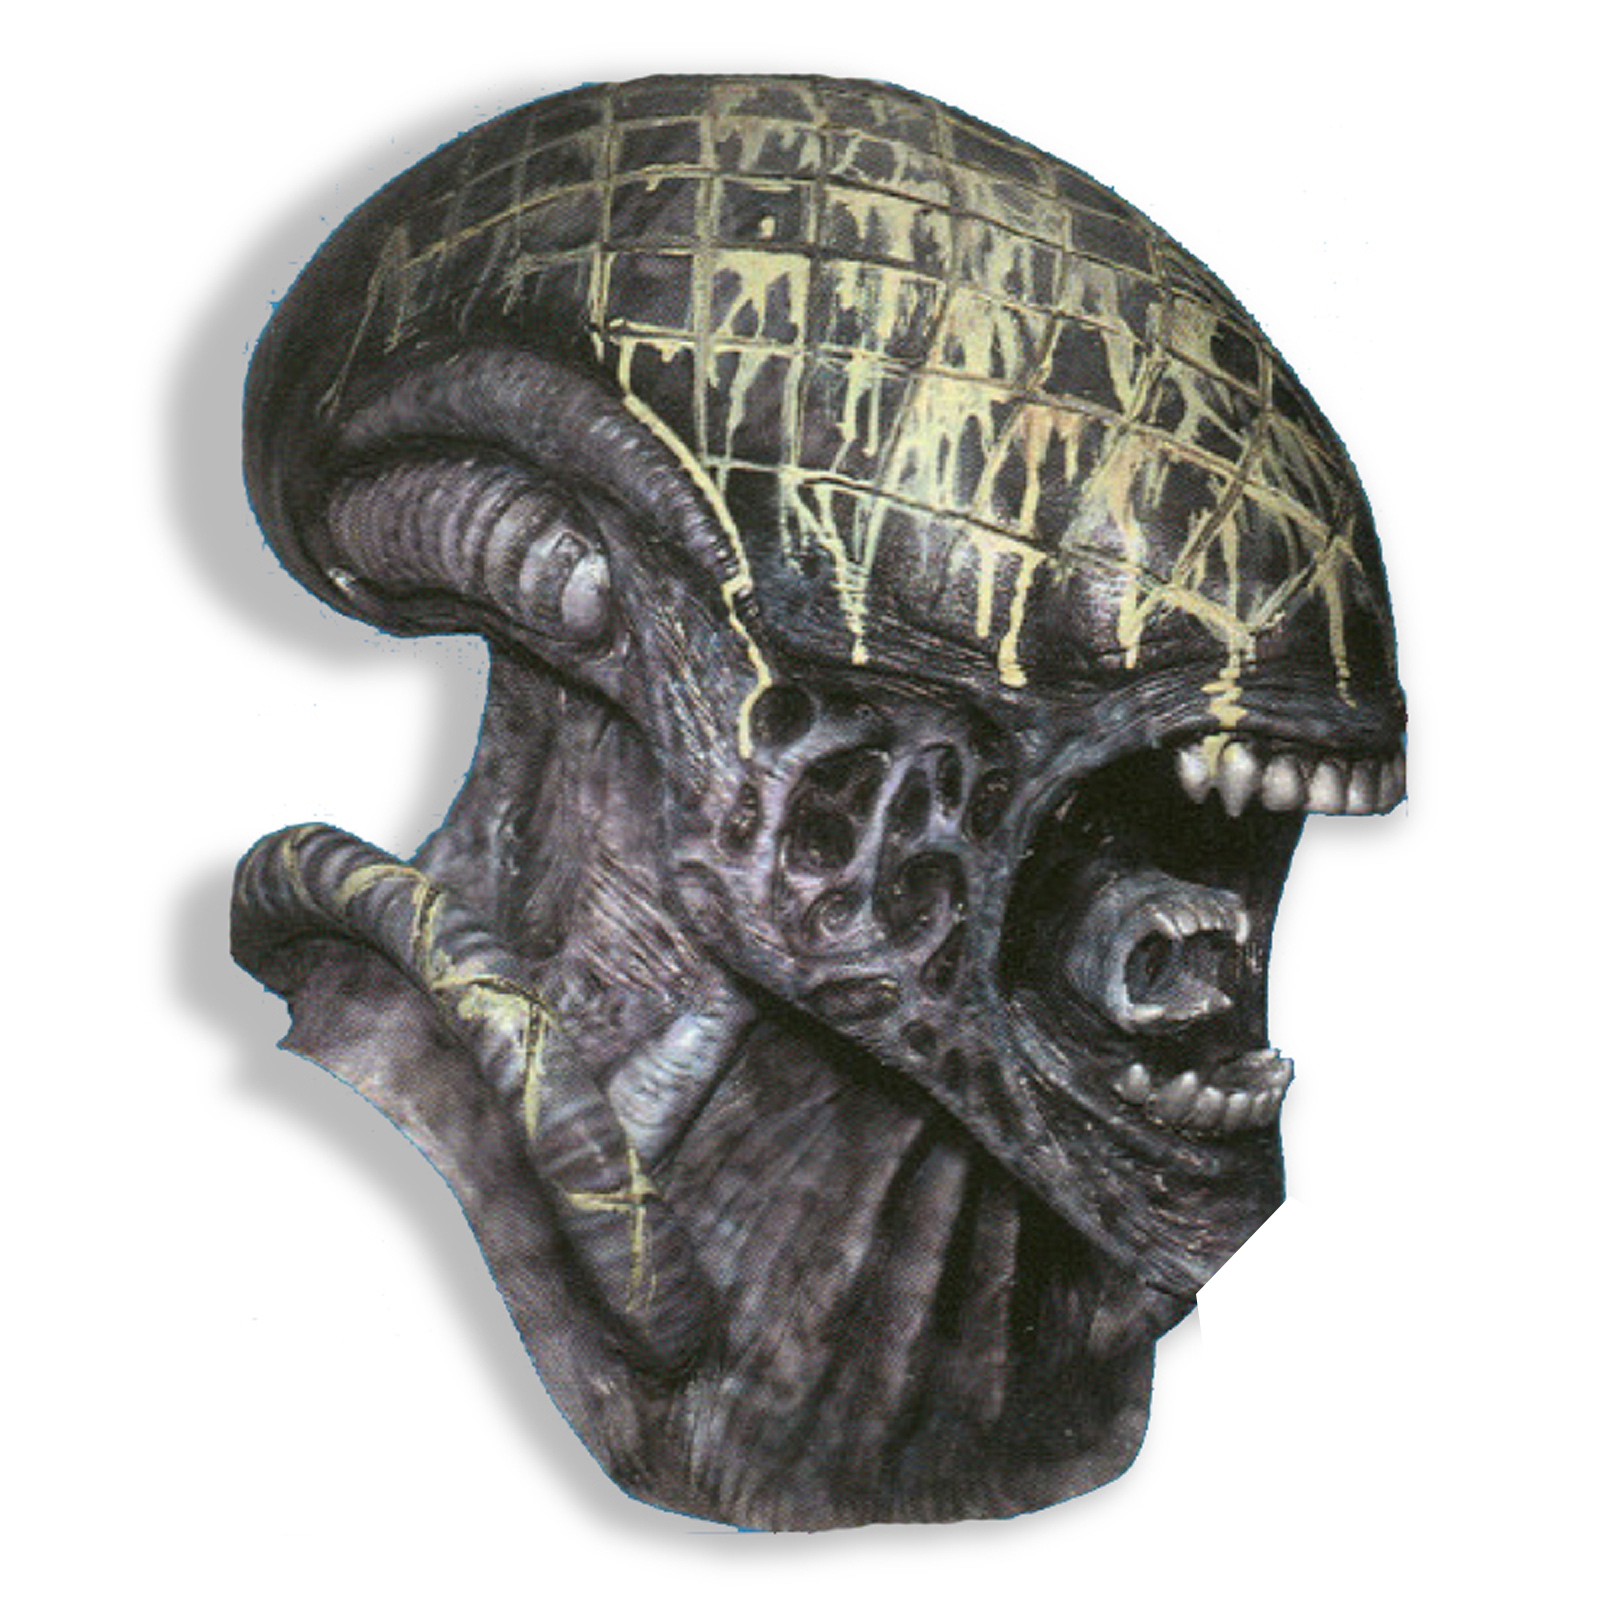 Alien Deluxe Adult Mask